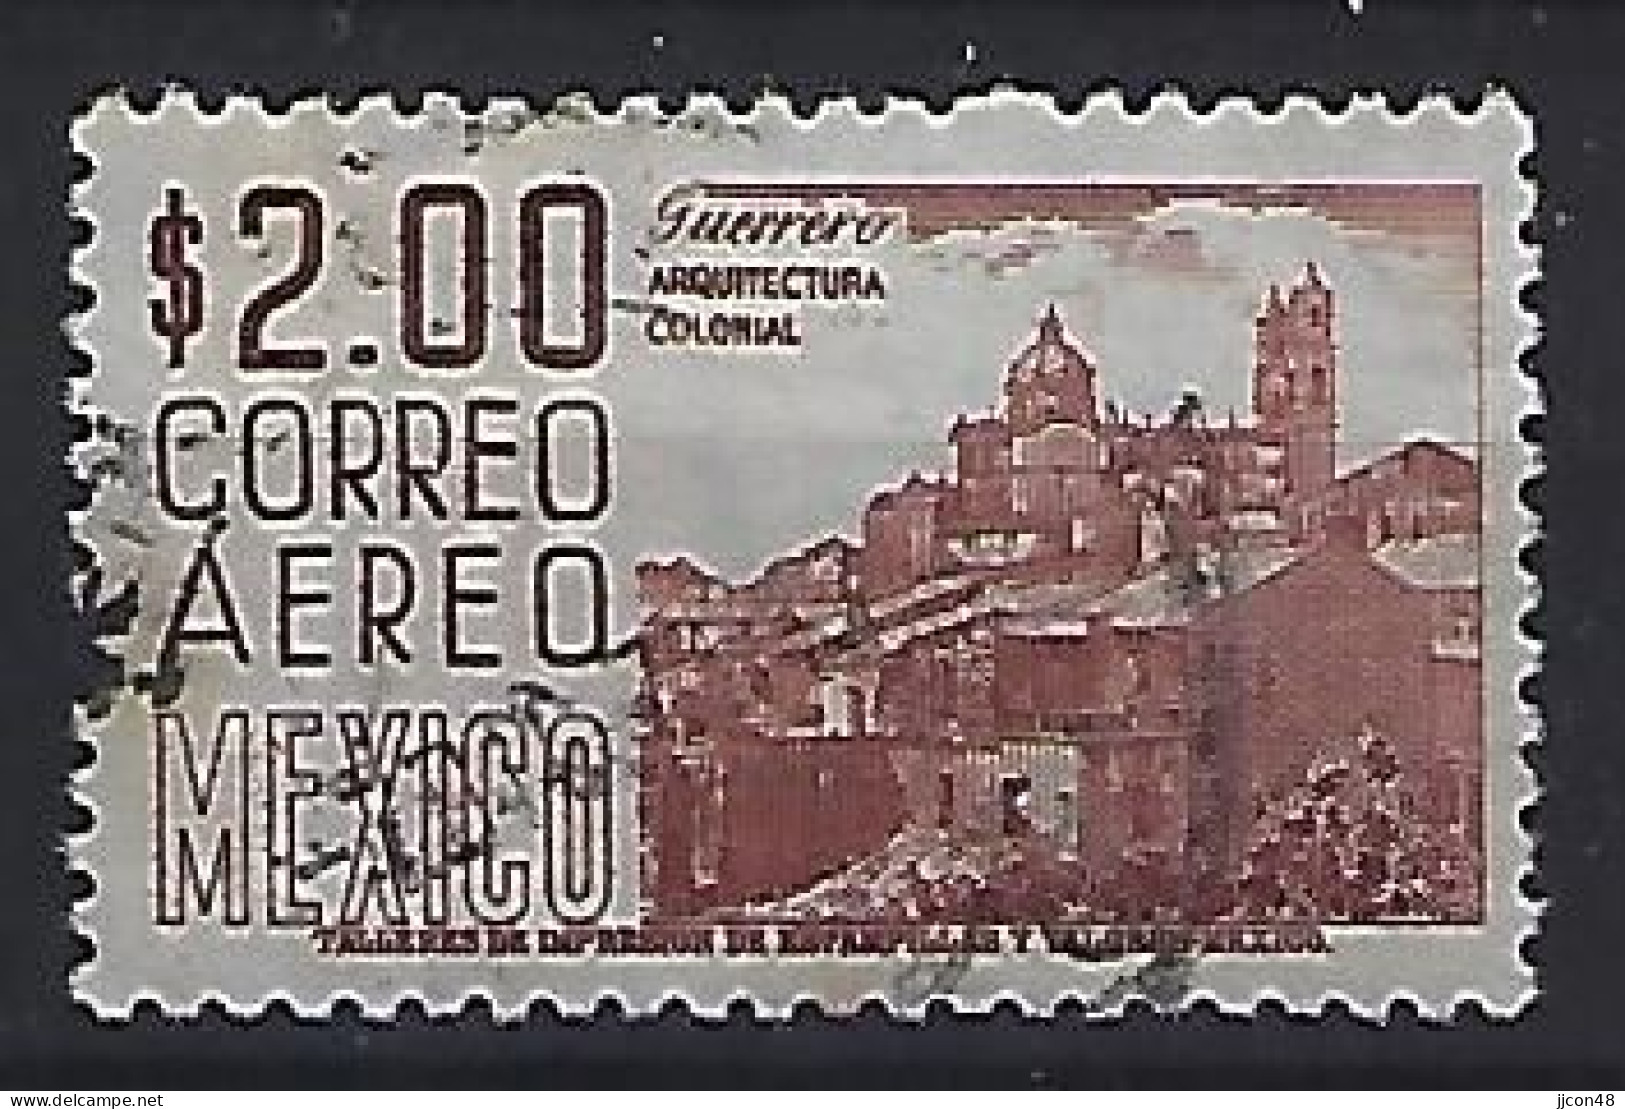 Mexico 1962-67  Einheimische Bilder (o) Mi.1129 A X Il (issued 1966) - Mexiko